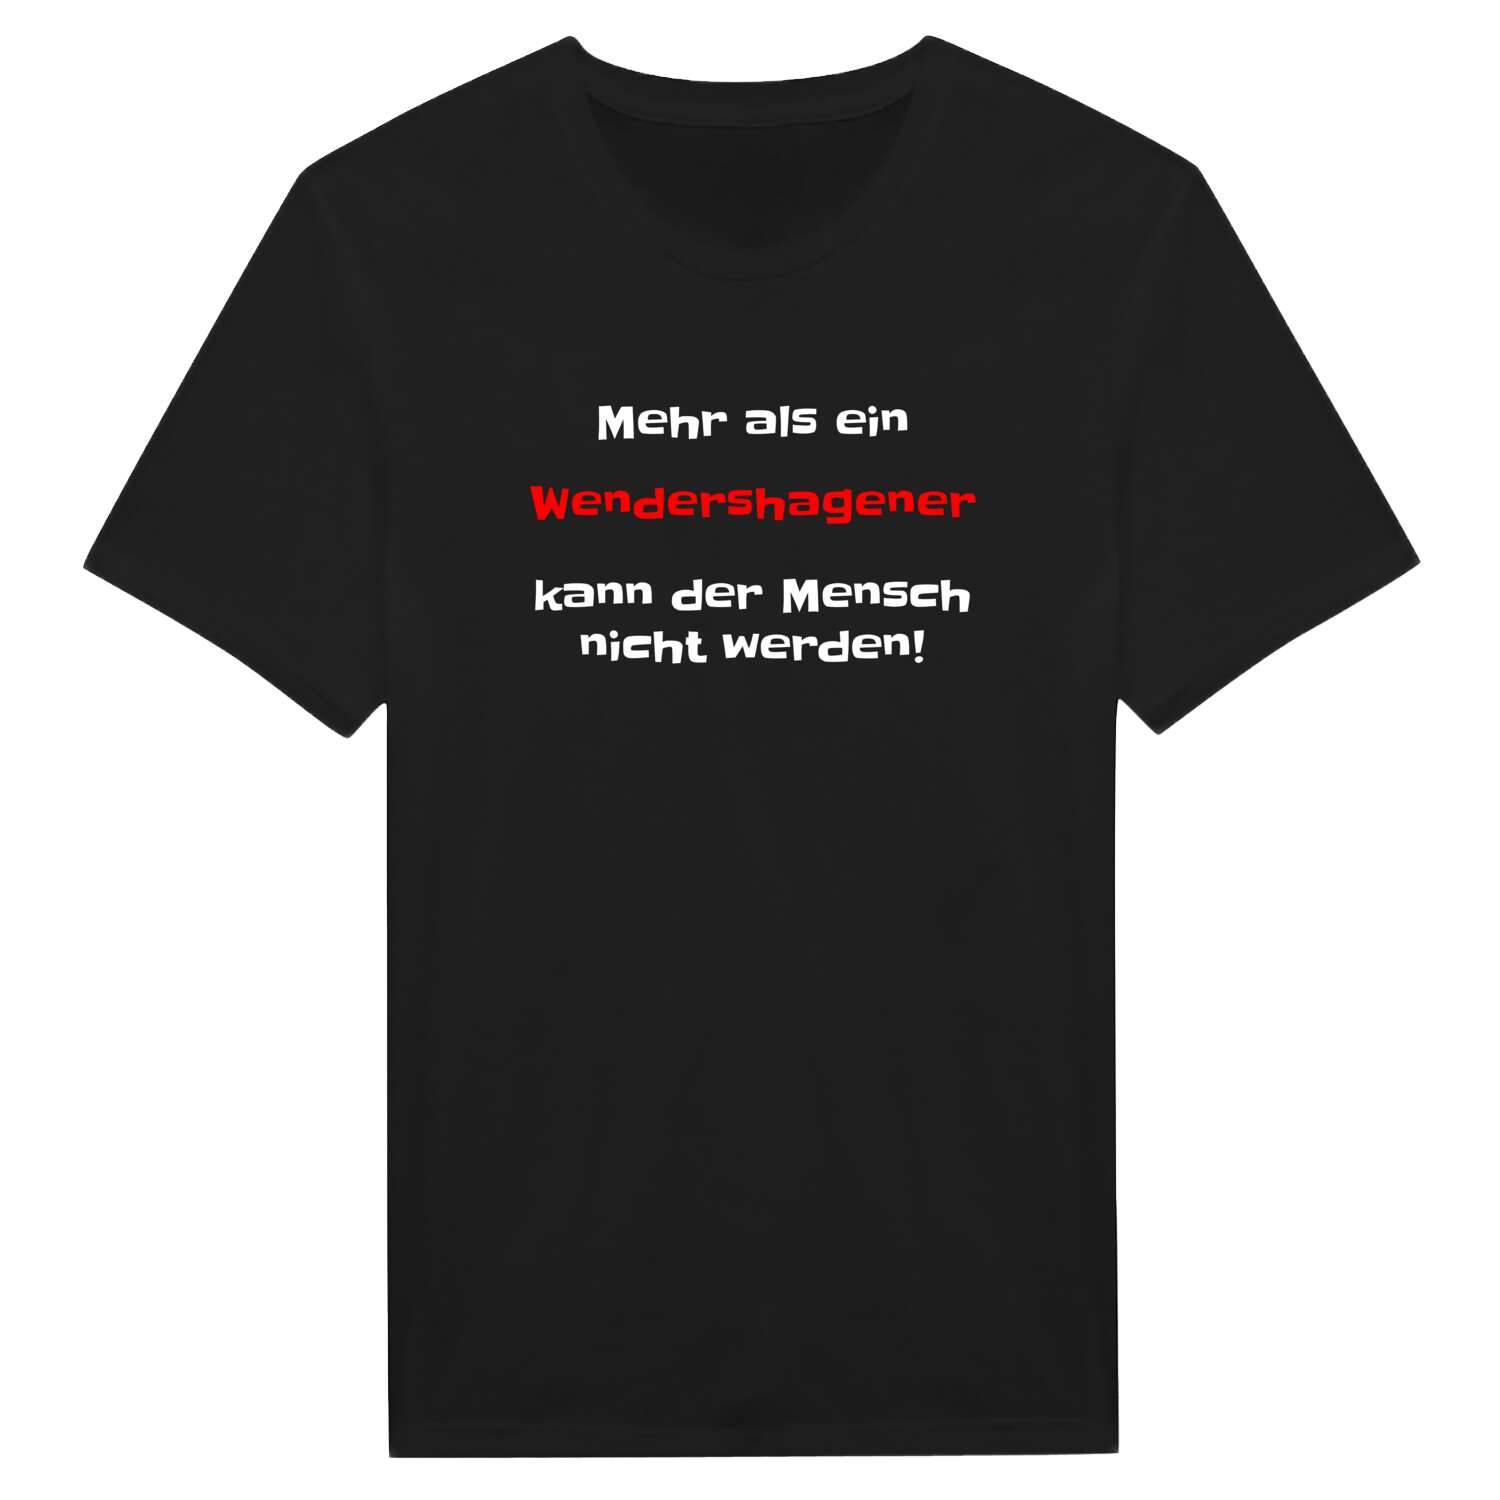 Wendershagen T-Shirt »Mehr als ein«